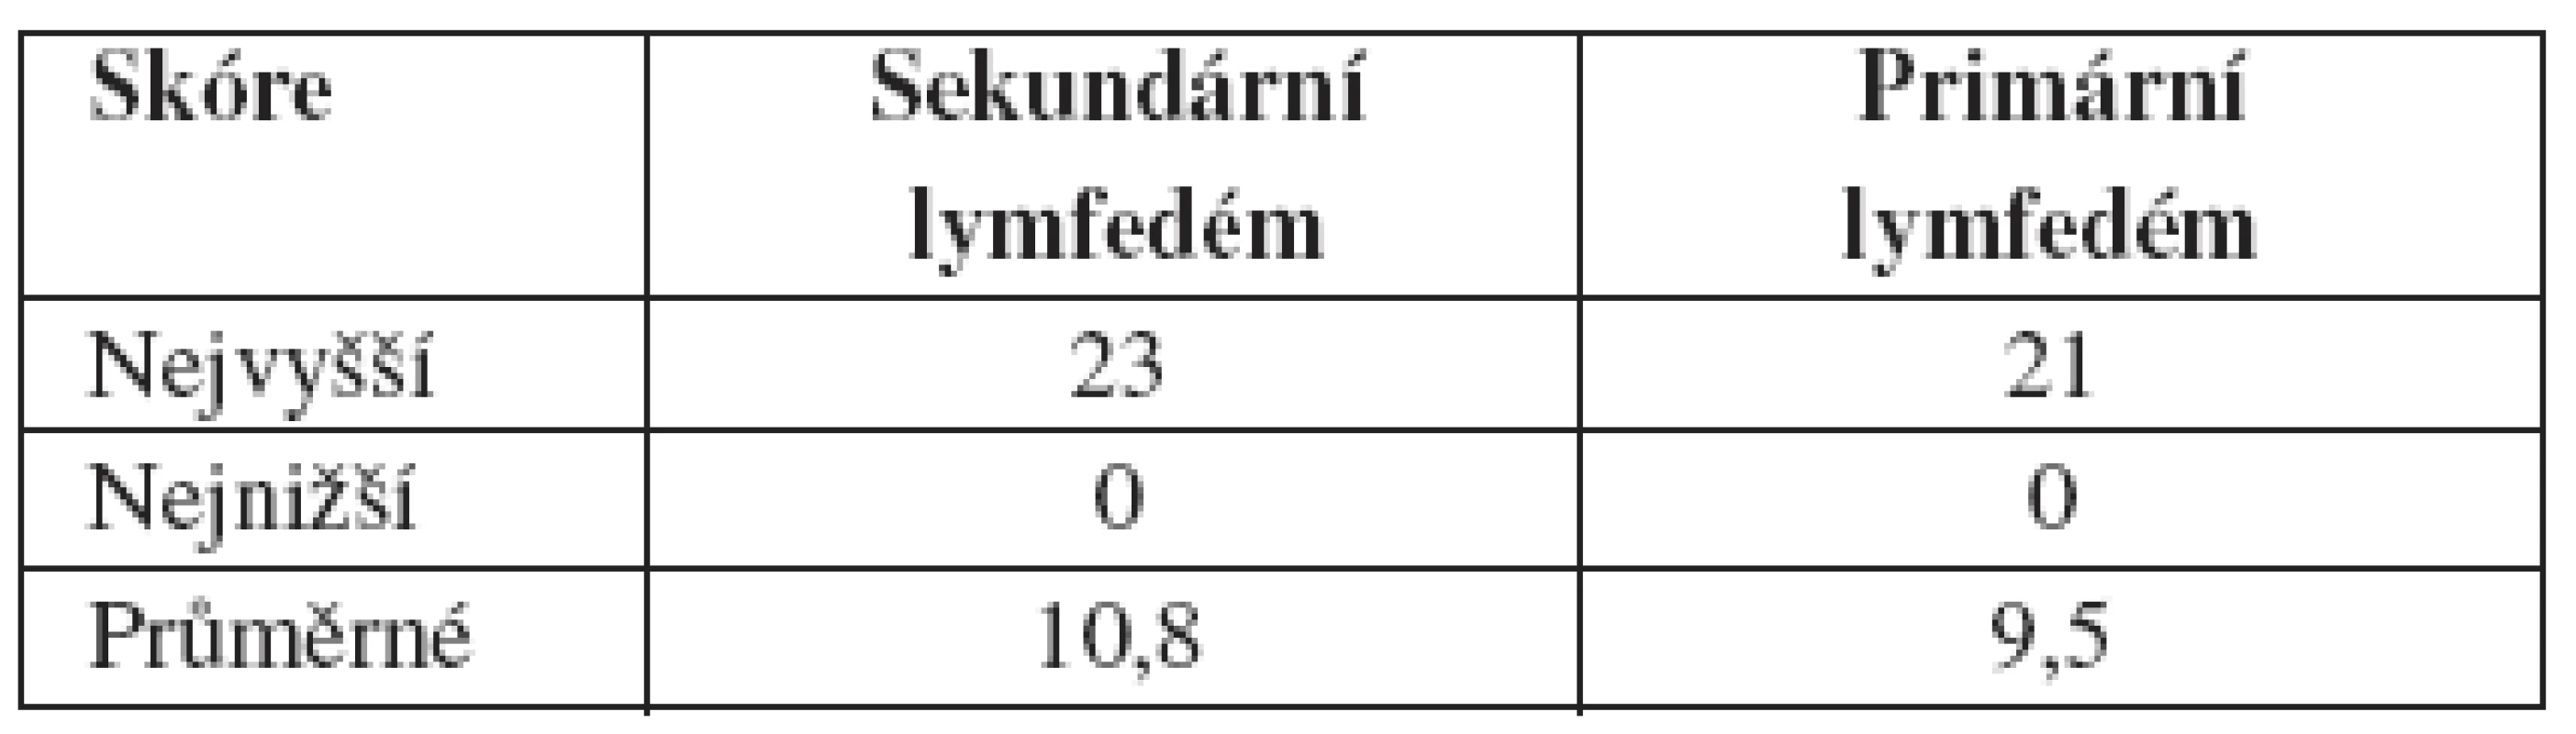 Porovnání skóre sekundárního a primárního lymfedému